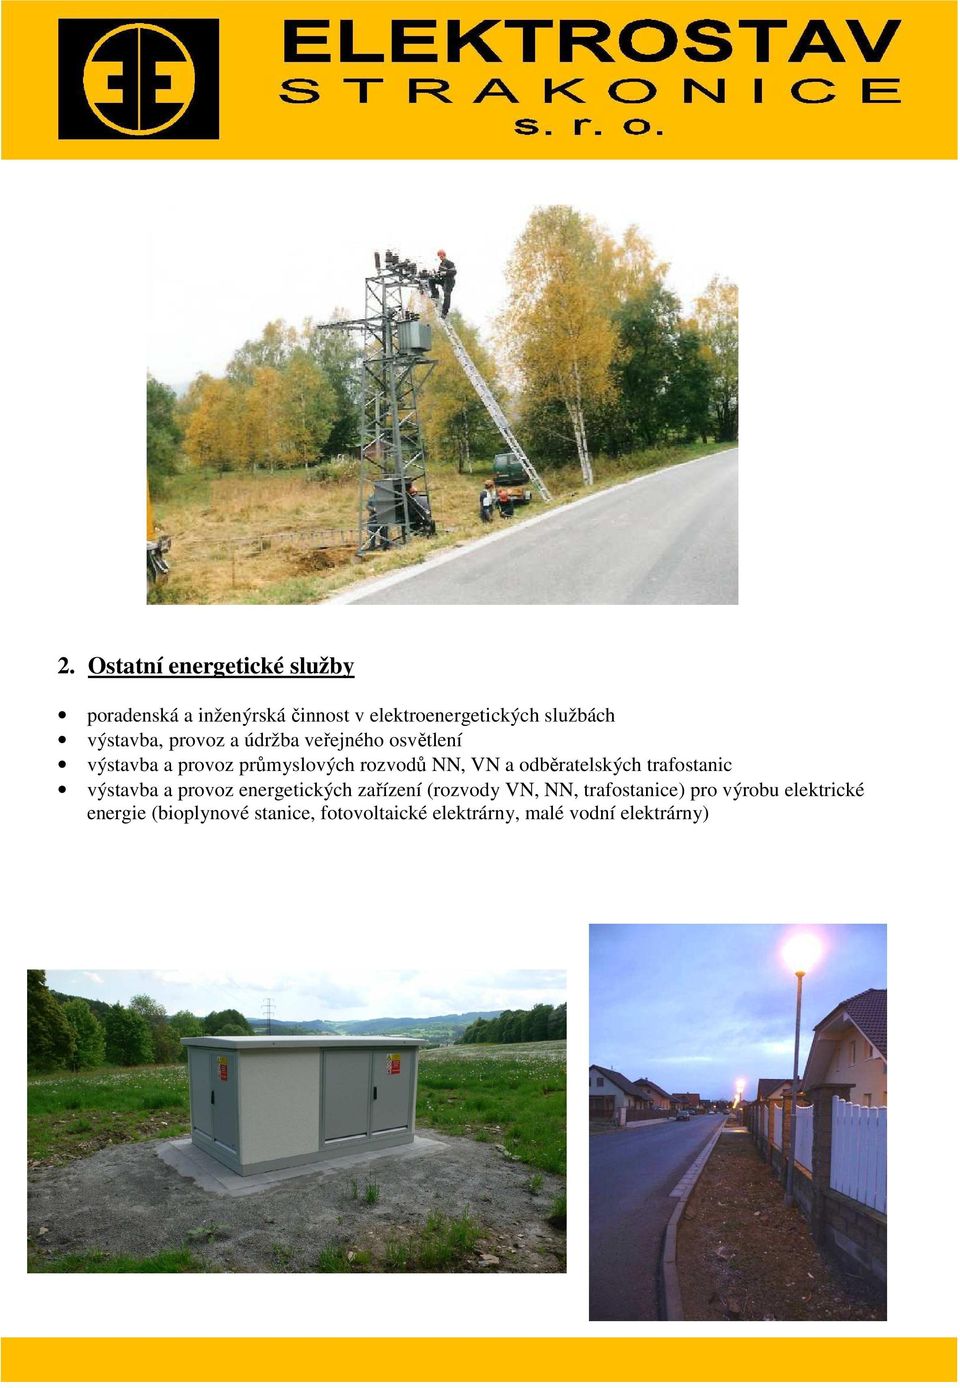 odběratelských trafostanic výstavba a provoz energetických zařízení (rozvody VN, NN,